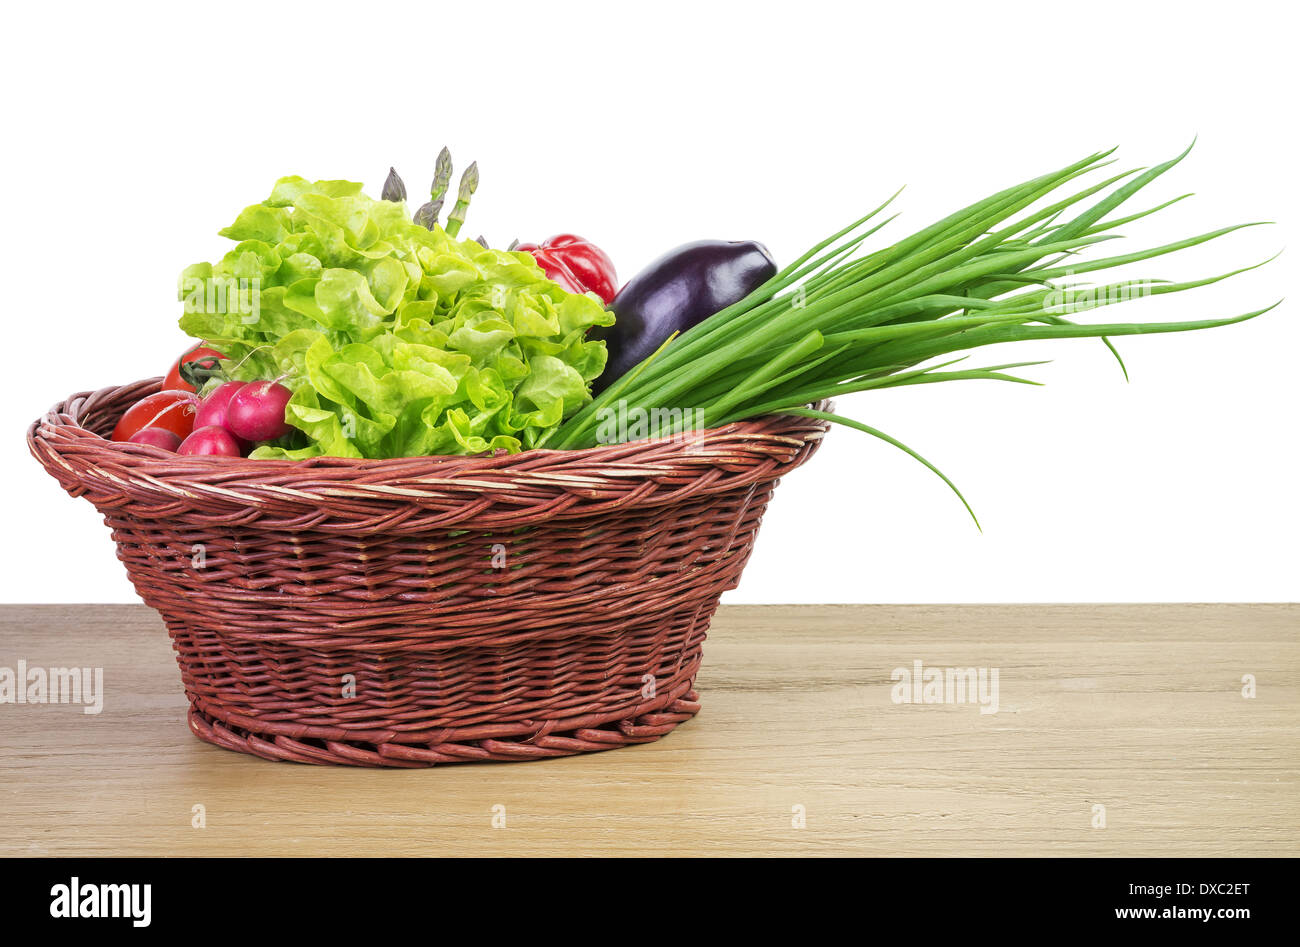 Fresche verdure organiche in un cesto su legno tabella vintage Foto Stock